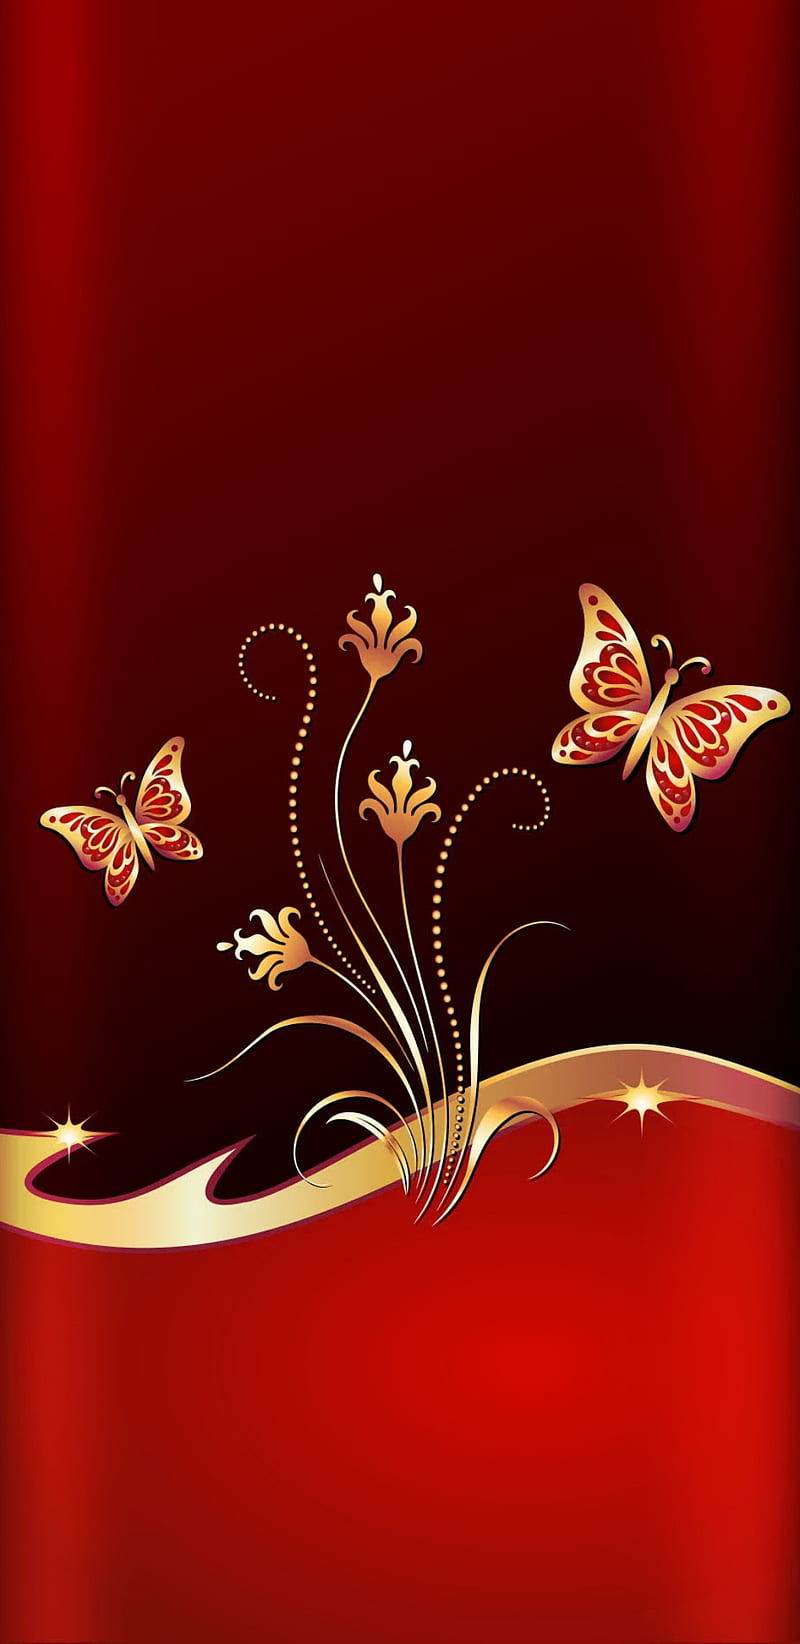 Golden Butterfly Stock Illustrations  7116 Golden Butterfly Stock  Illustrations Vectors  Clipart  Dreamstime